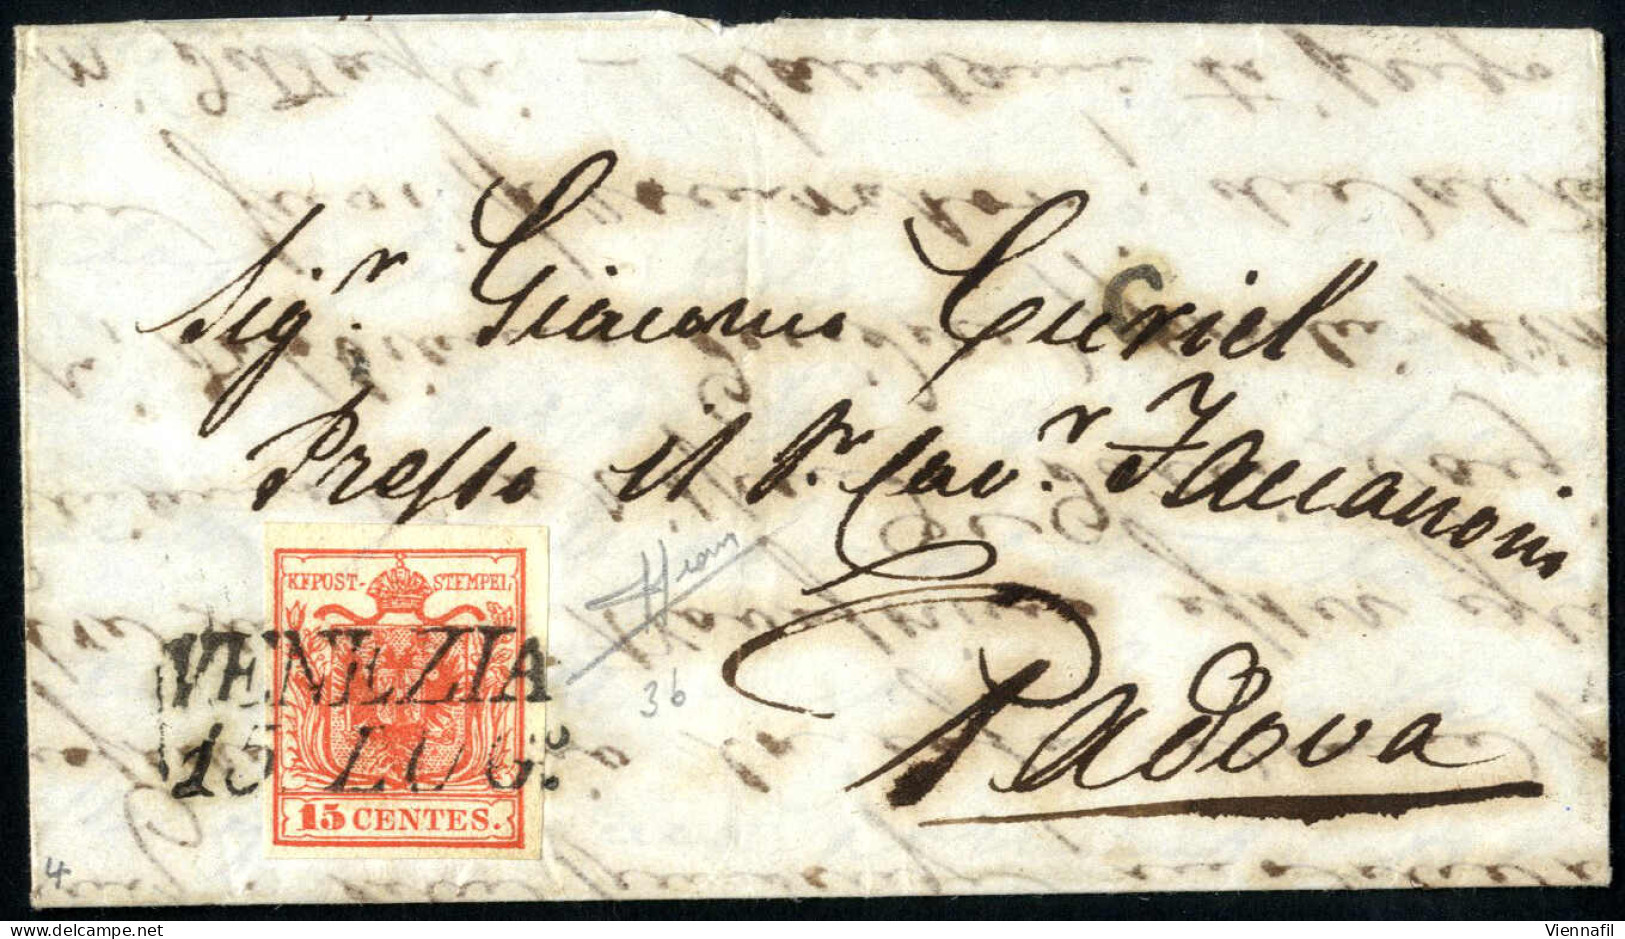 cover 1850, lotto di 15 lettere ed un frontespizio, di cui 14 affrancata con 15 cent. rosso, una con due esemplari del 1